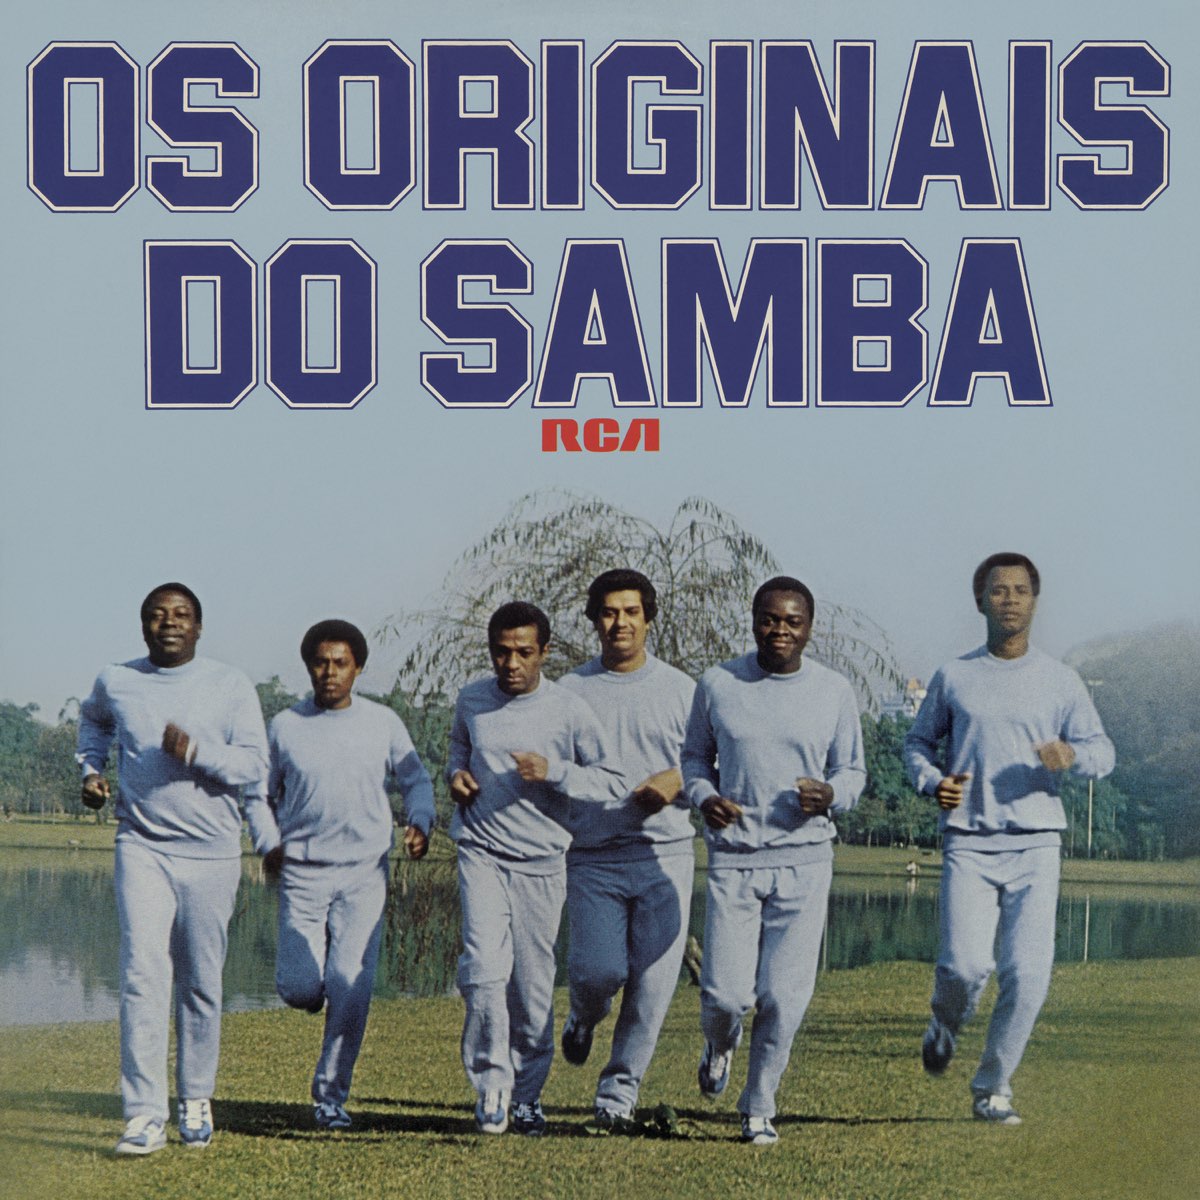 Os Originais Do Samba – álbum de Os Originais do Samba – Apple Music